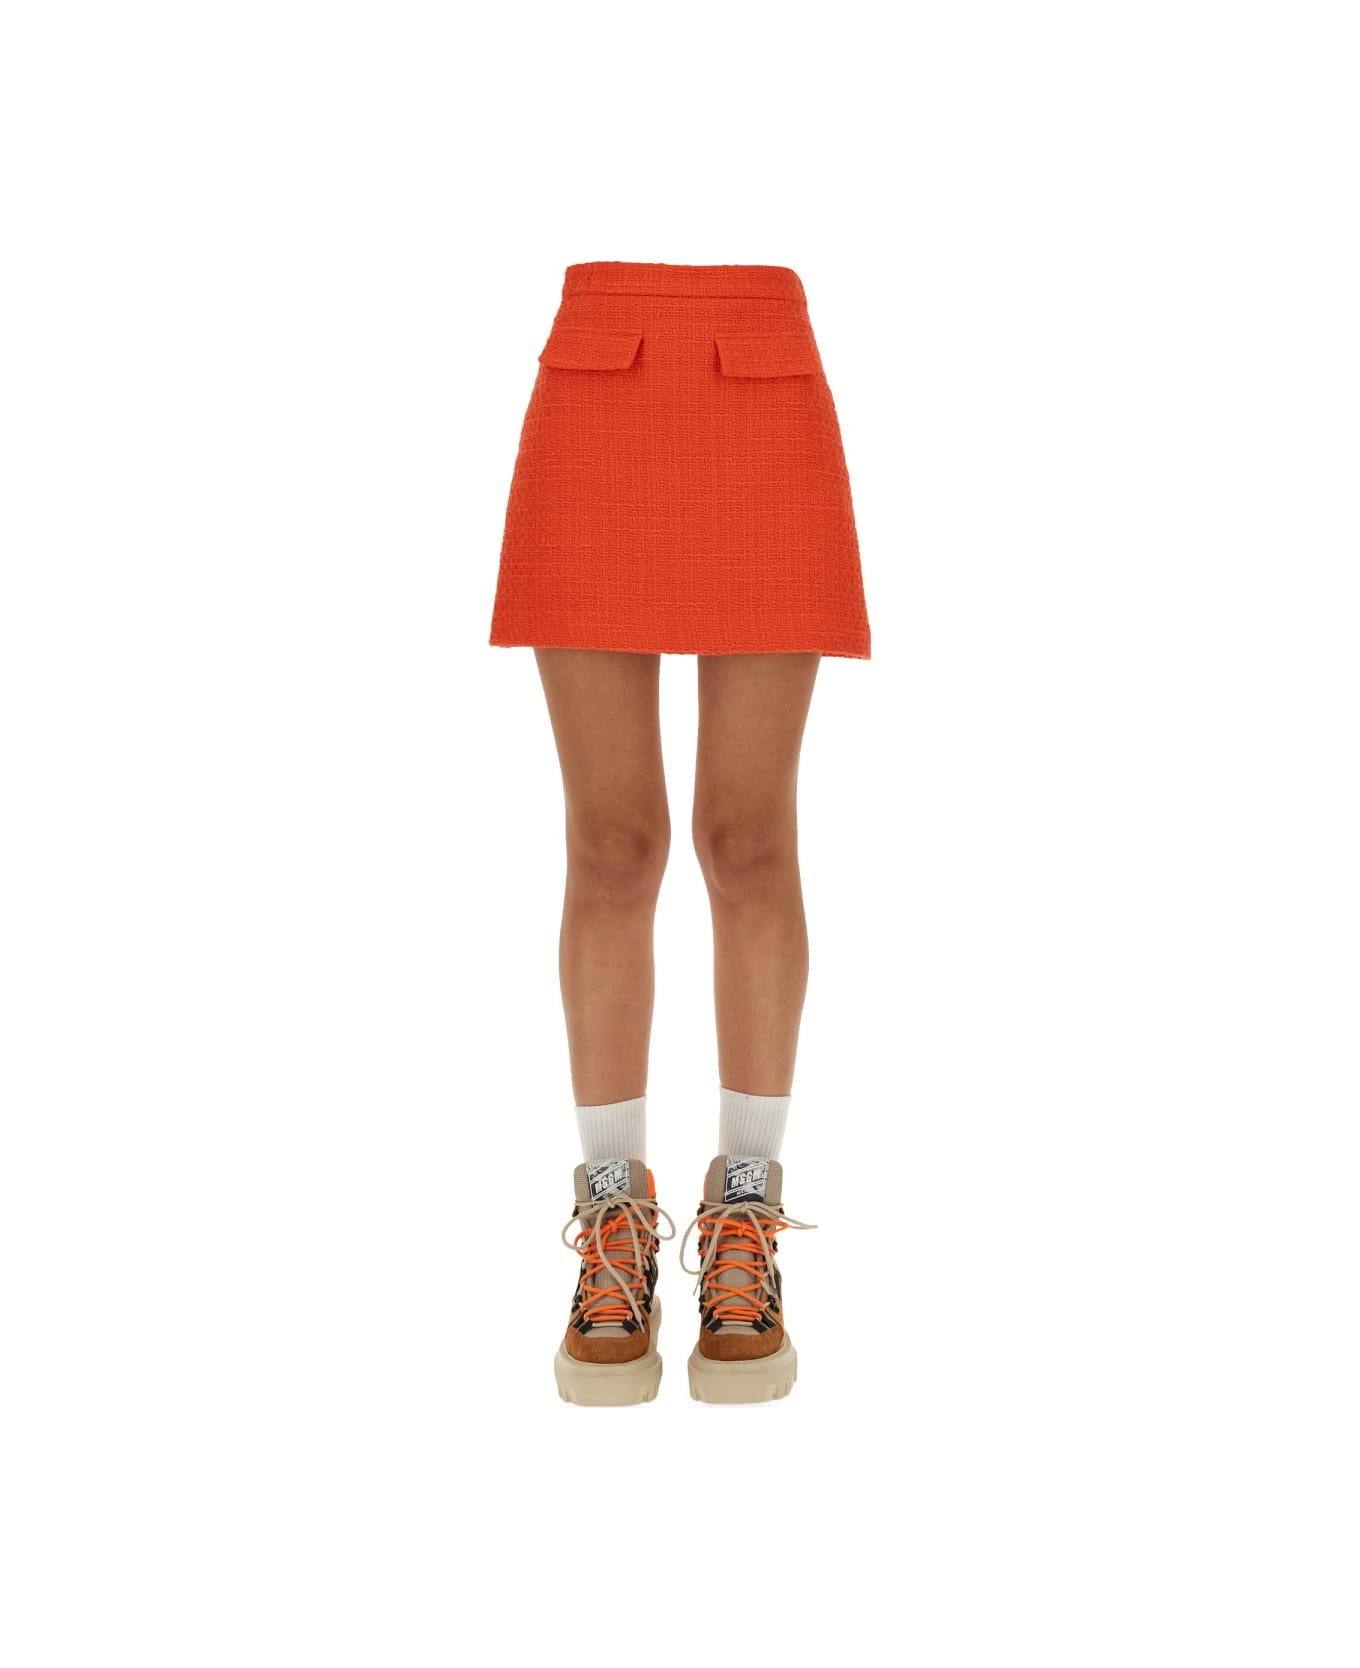 MSGM Tweed Mini Skirt - ORANGE